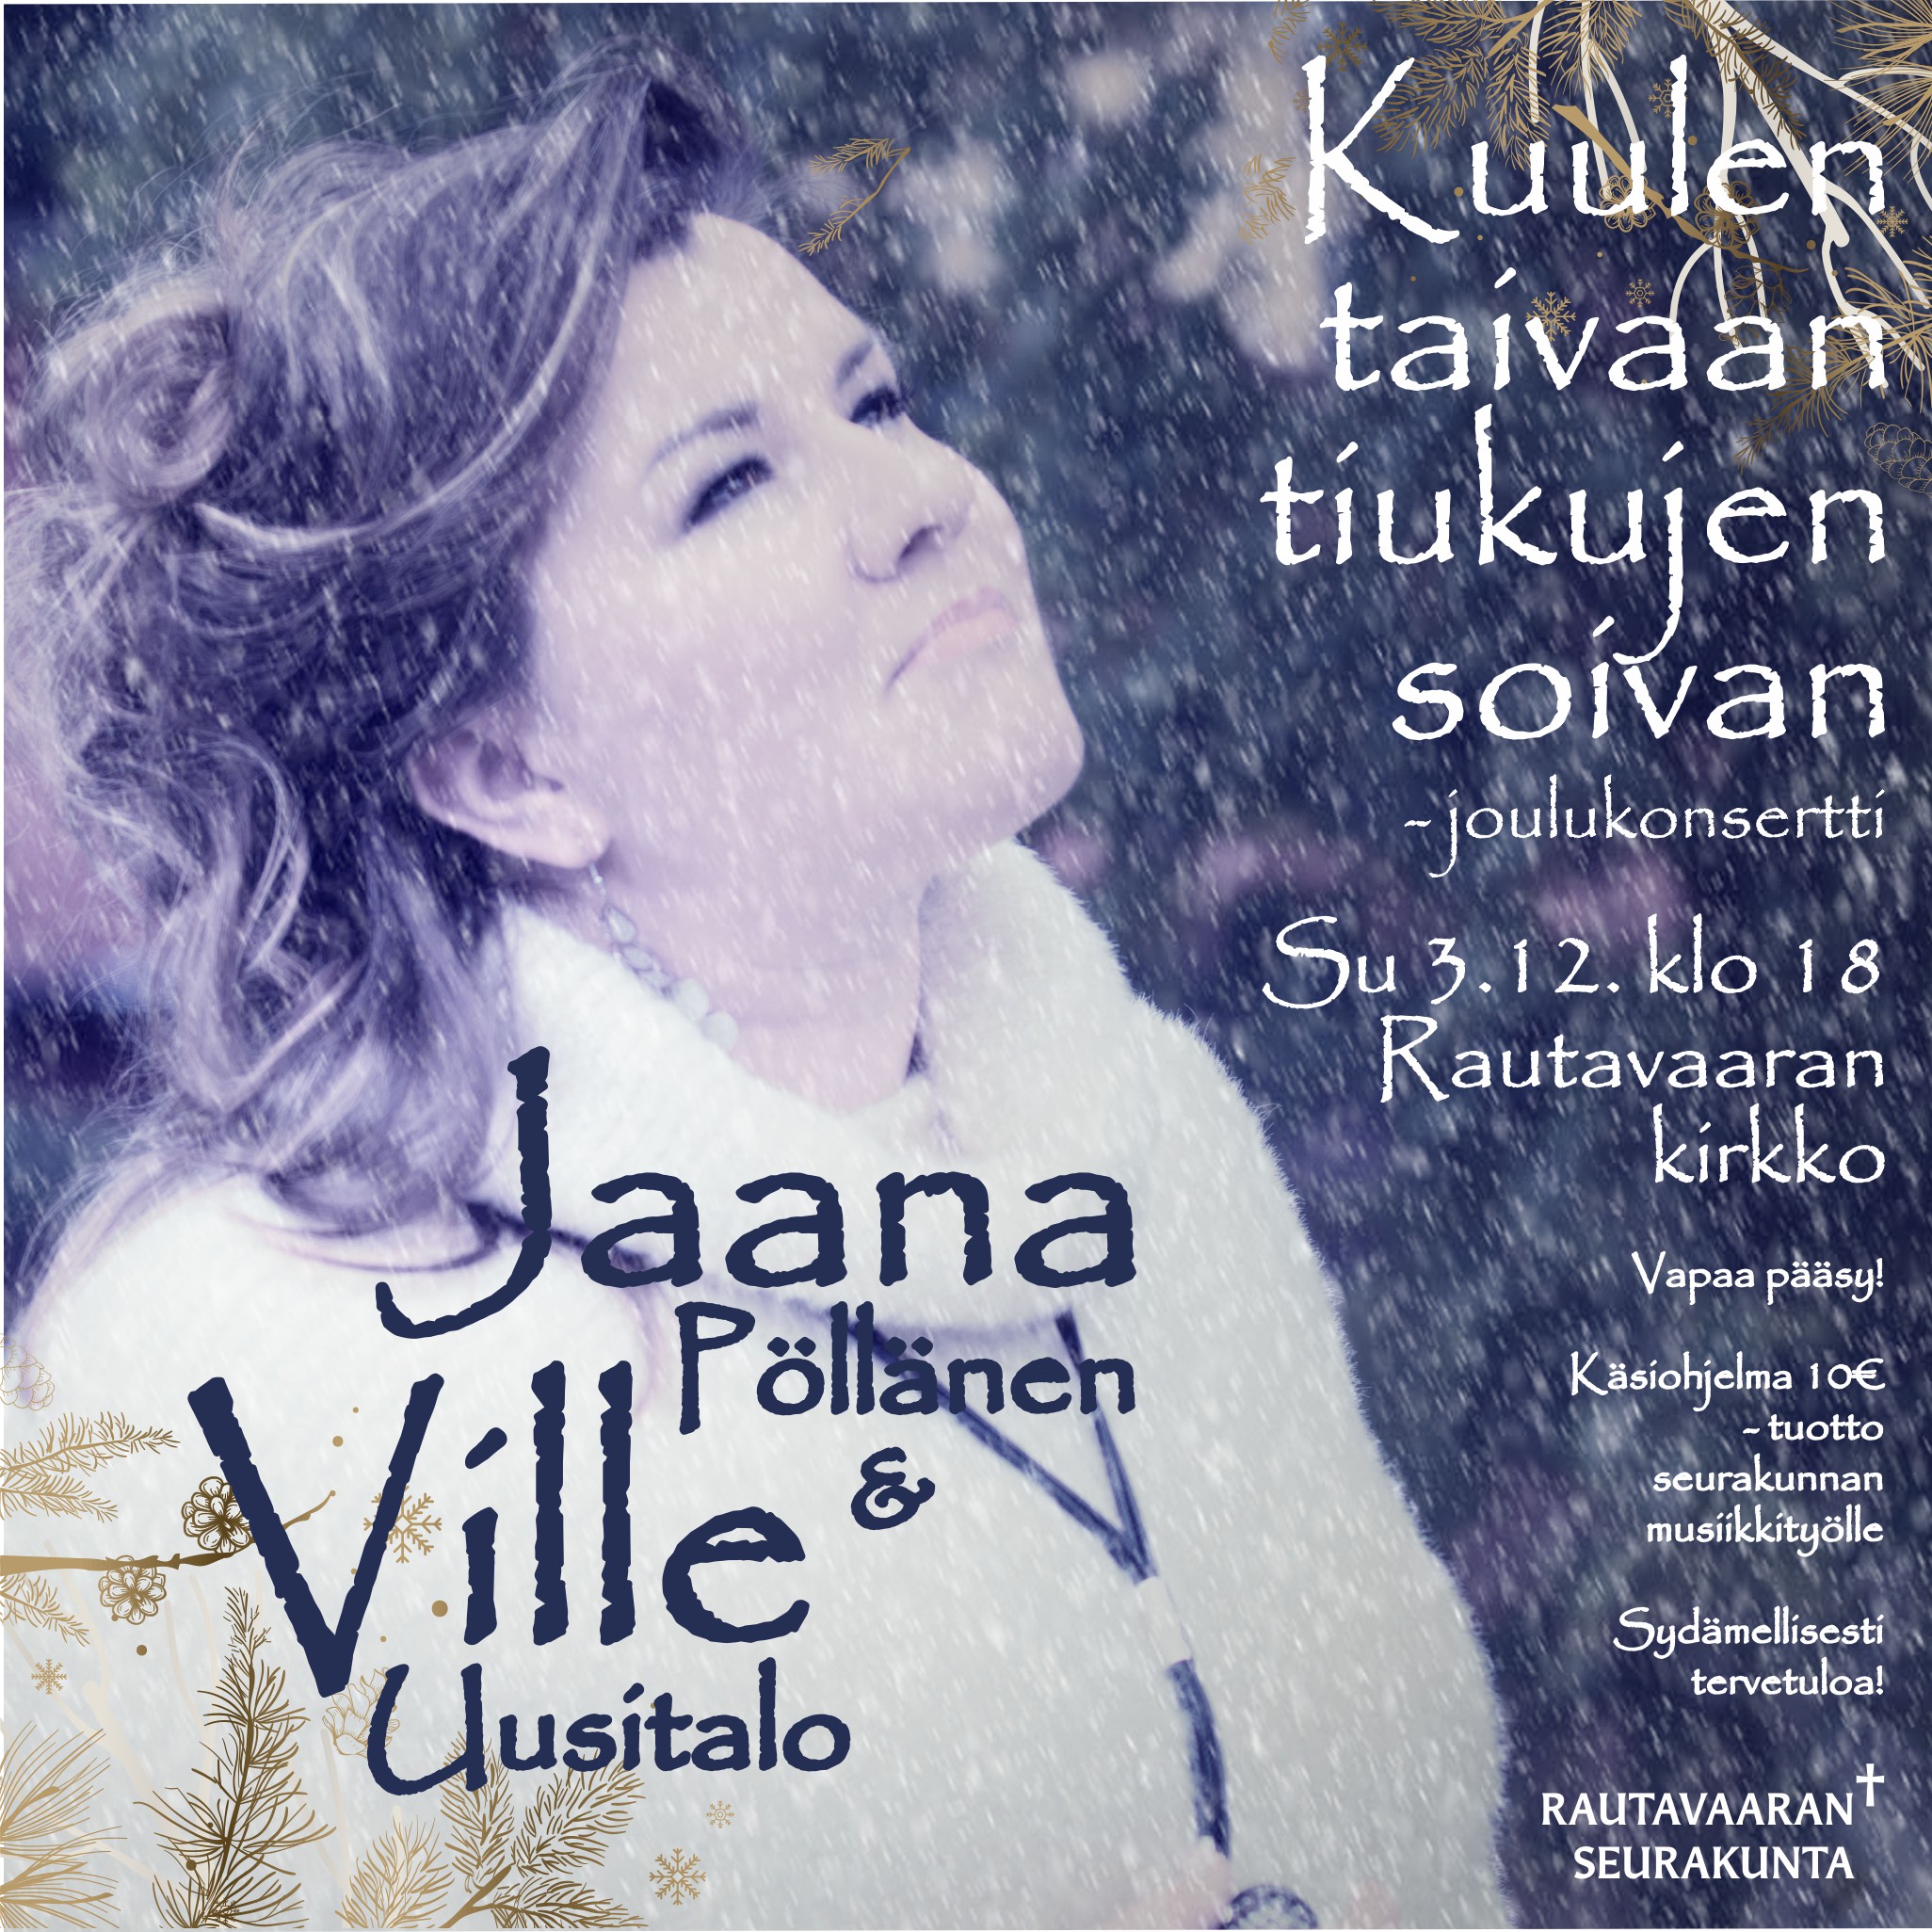 Jaana Pöllänen -joulukonserttimainos